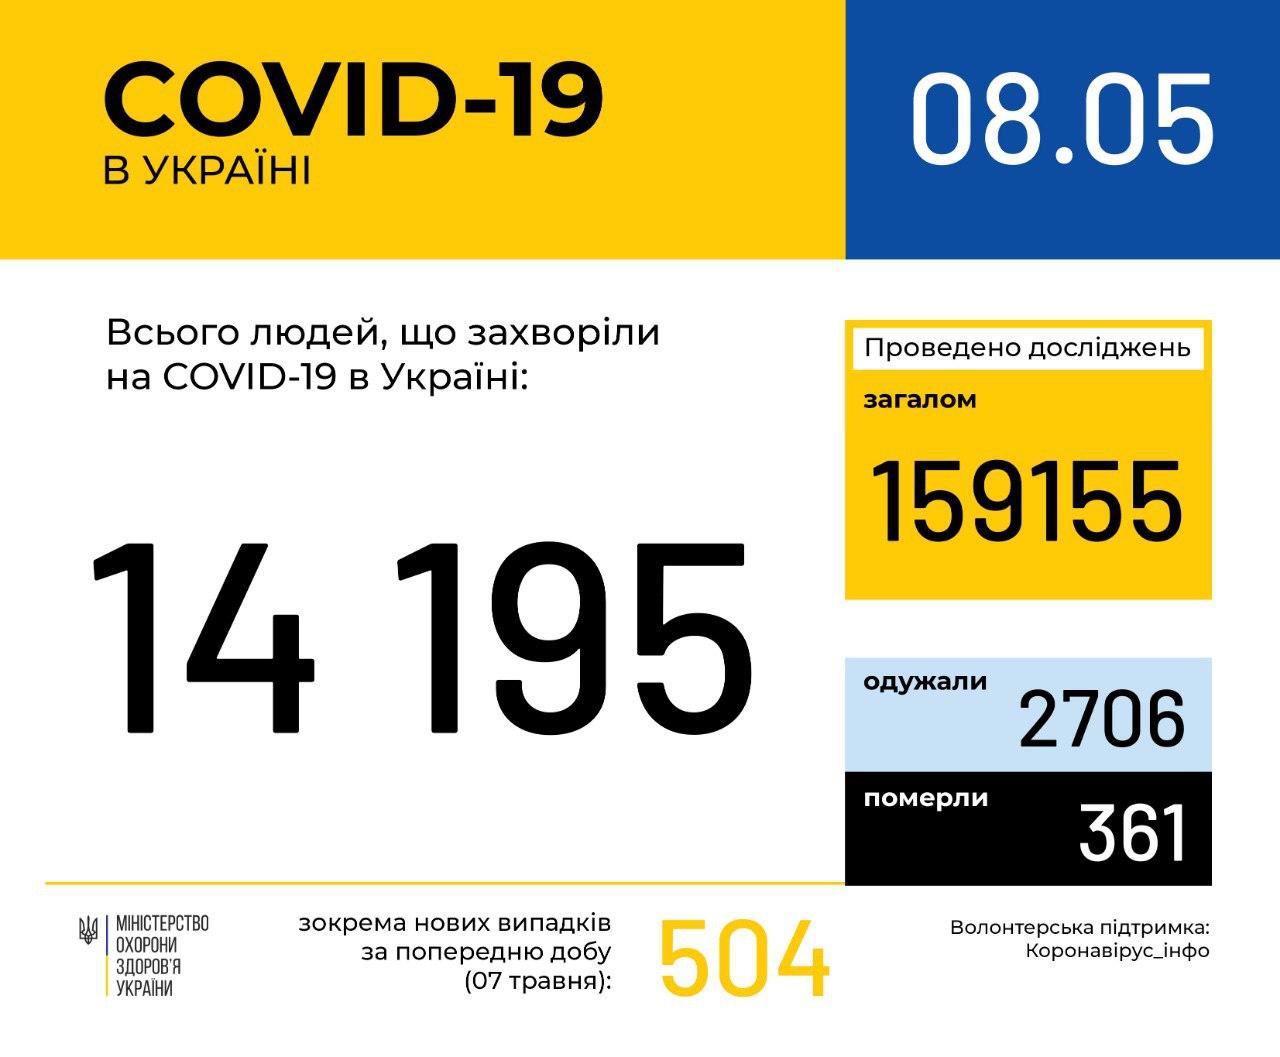 В Україні зафіксовано 14195 випадків коронавірусної хвороби COVID-19, - МОЗ